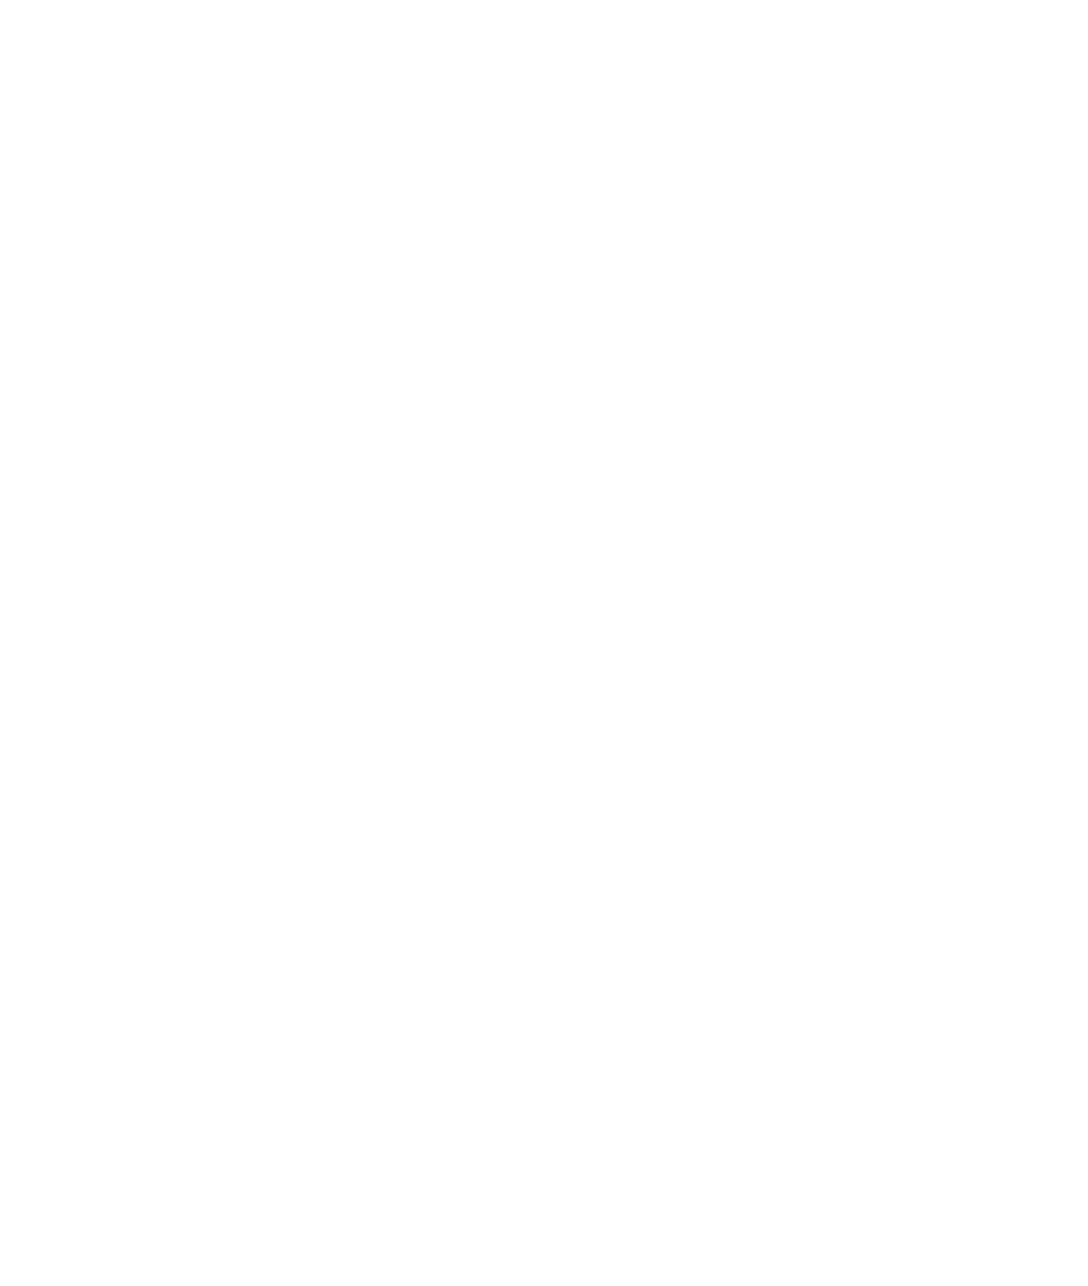 526 Media